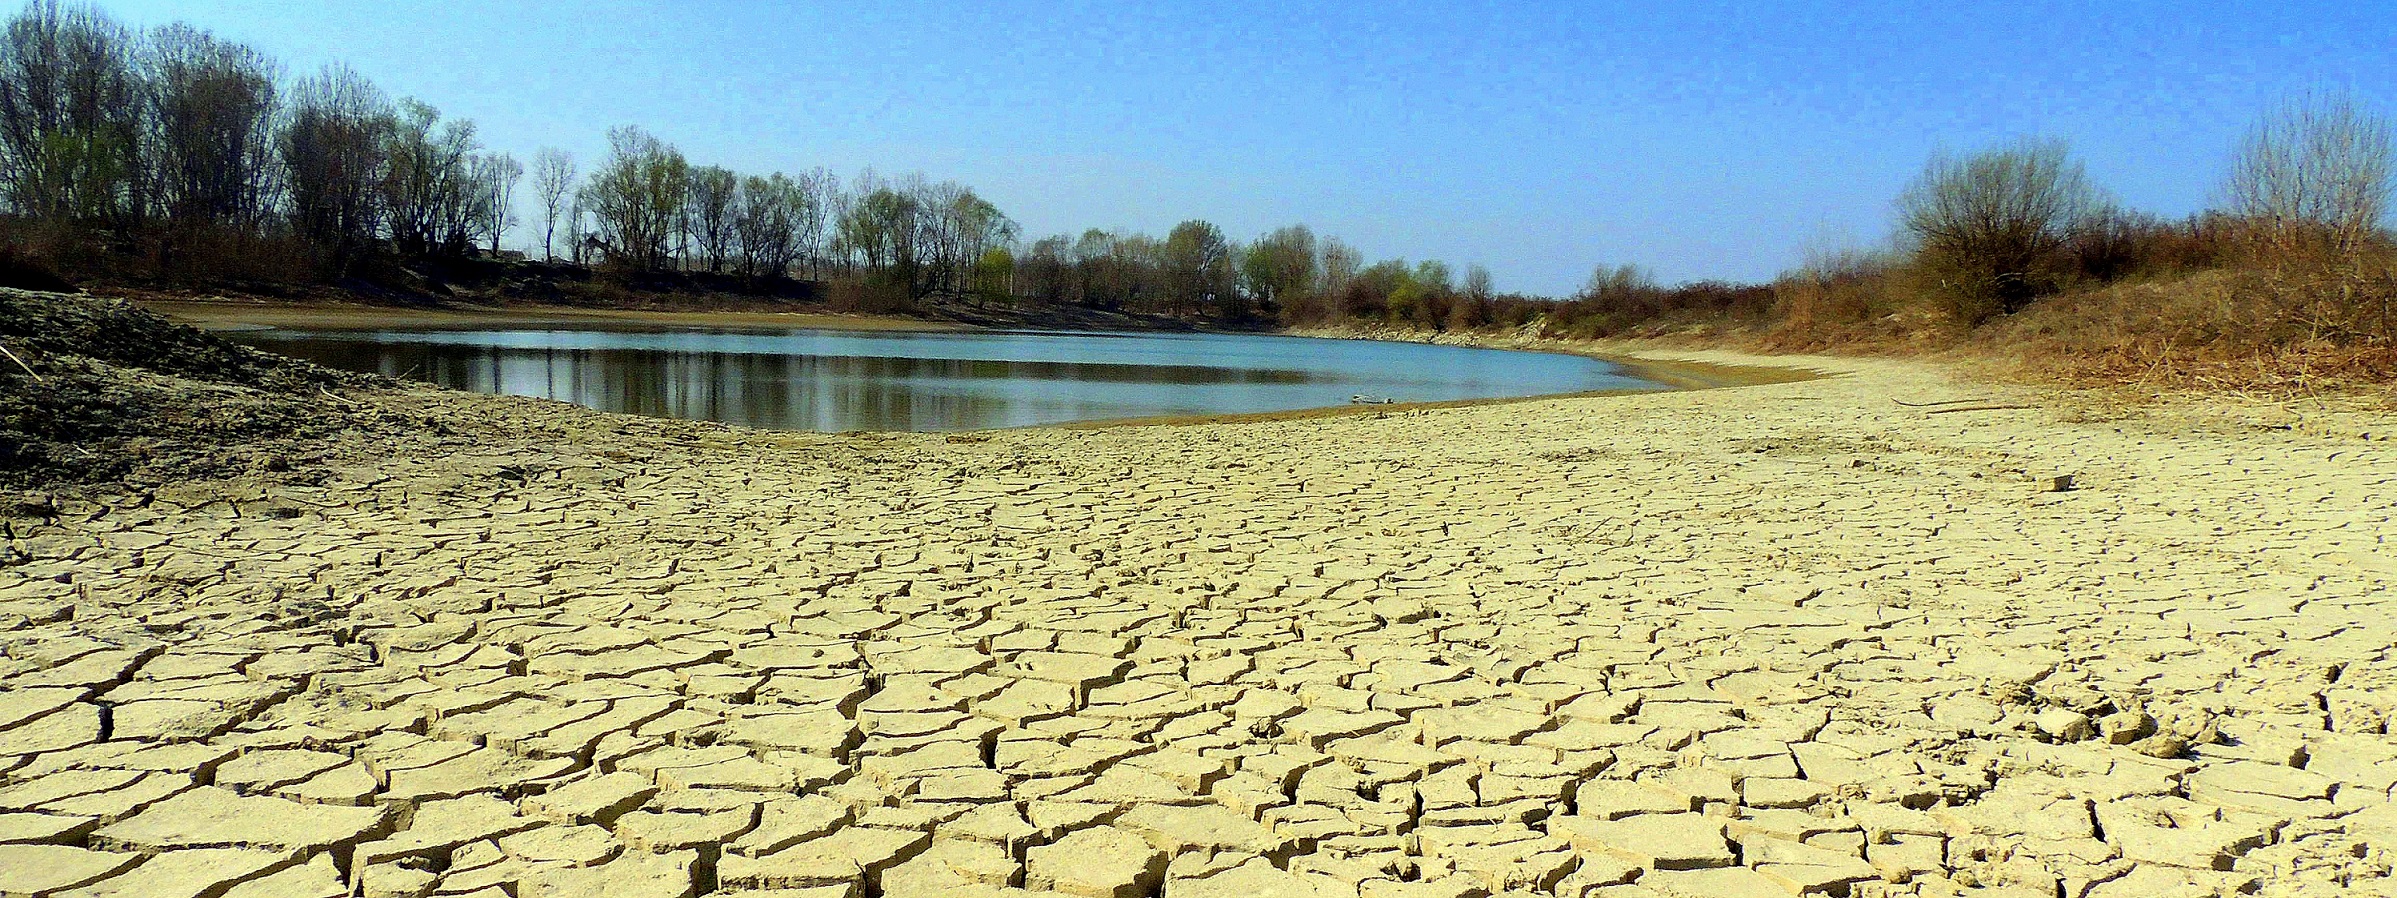 Campagne riarse da caldo e siccità salvate dall’irrigazione. Ma in Veneto il 95% delle risorse idriche si perde nel mare